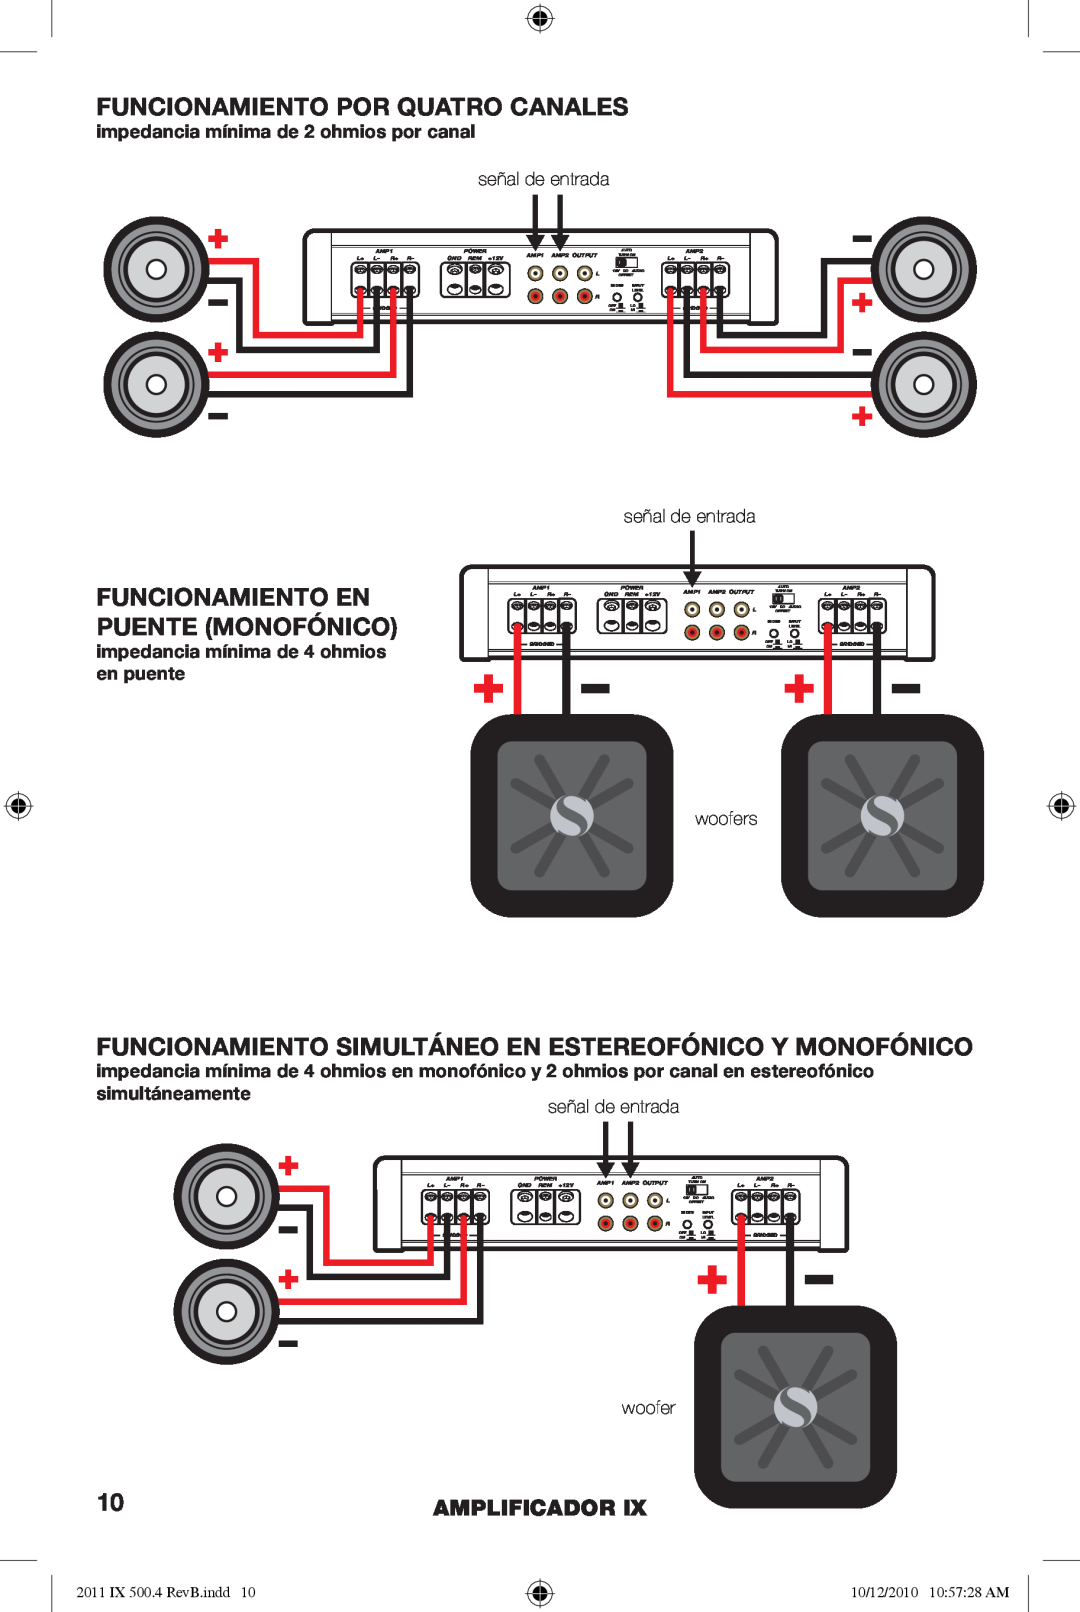 Kicker IX500.4 manual Funcionamiento Por Quatro Canales, Funcionamiento En Puente Monofónico, Amplificador 